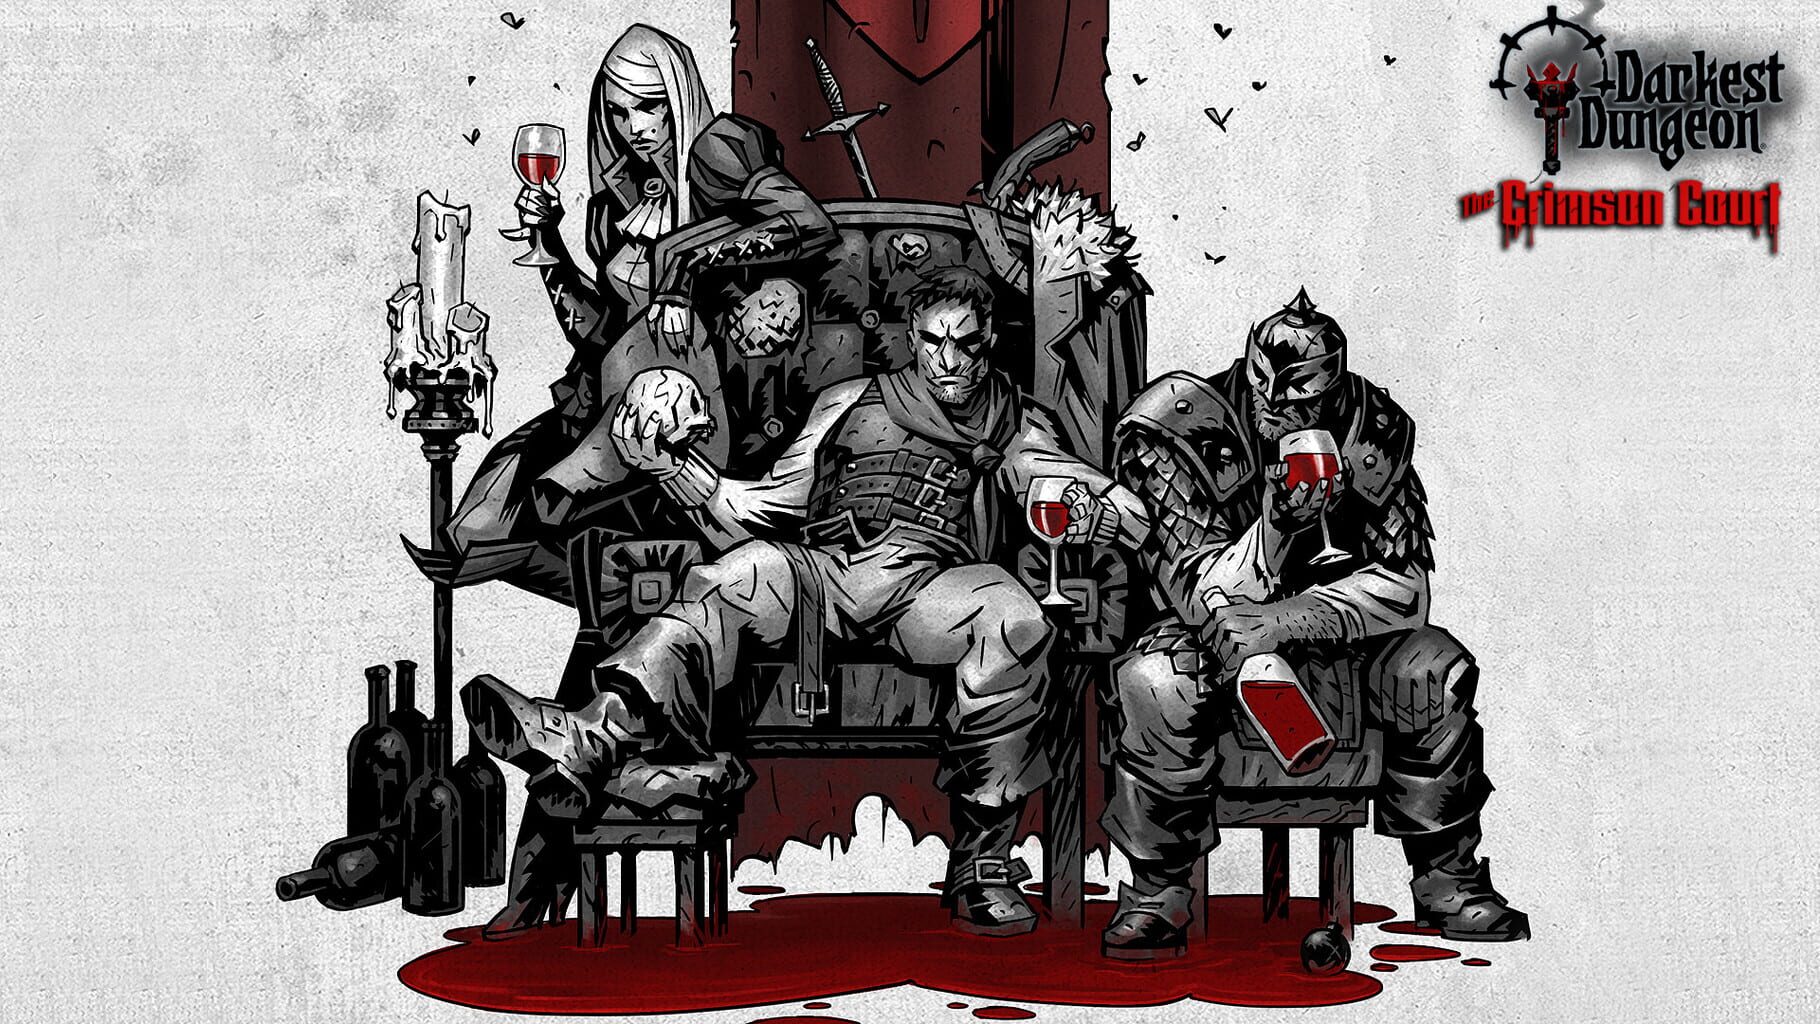 Artwork for Darkest Dungeon: The Crimson Court